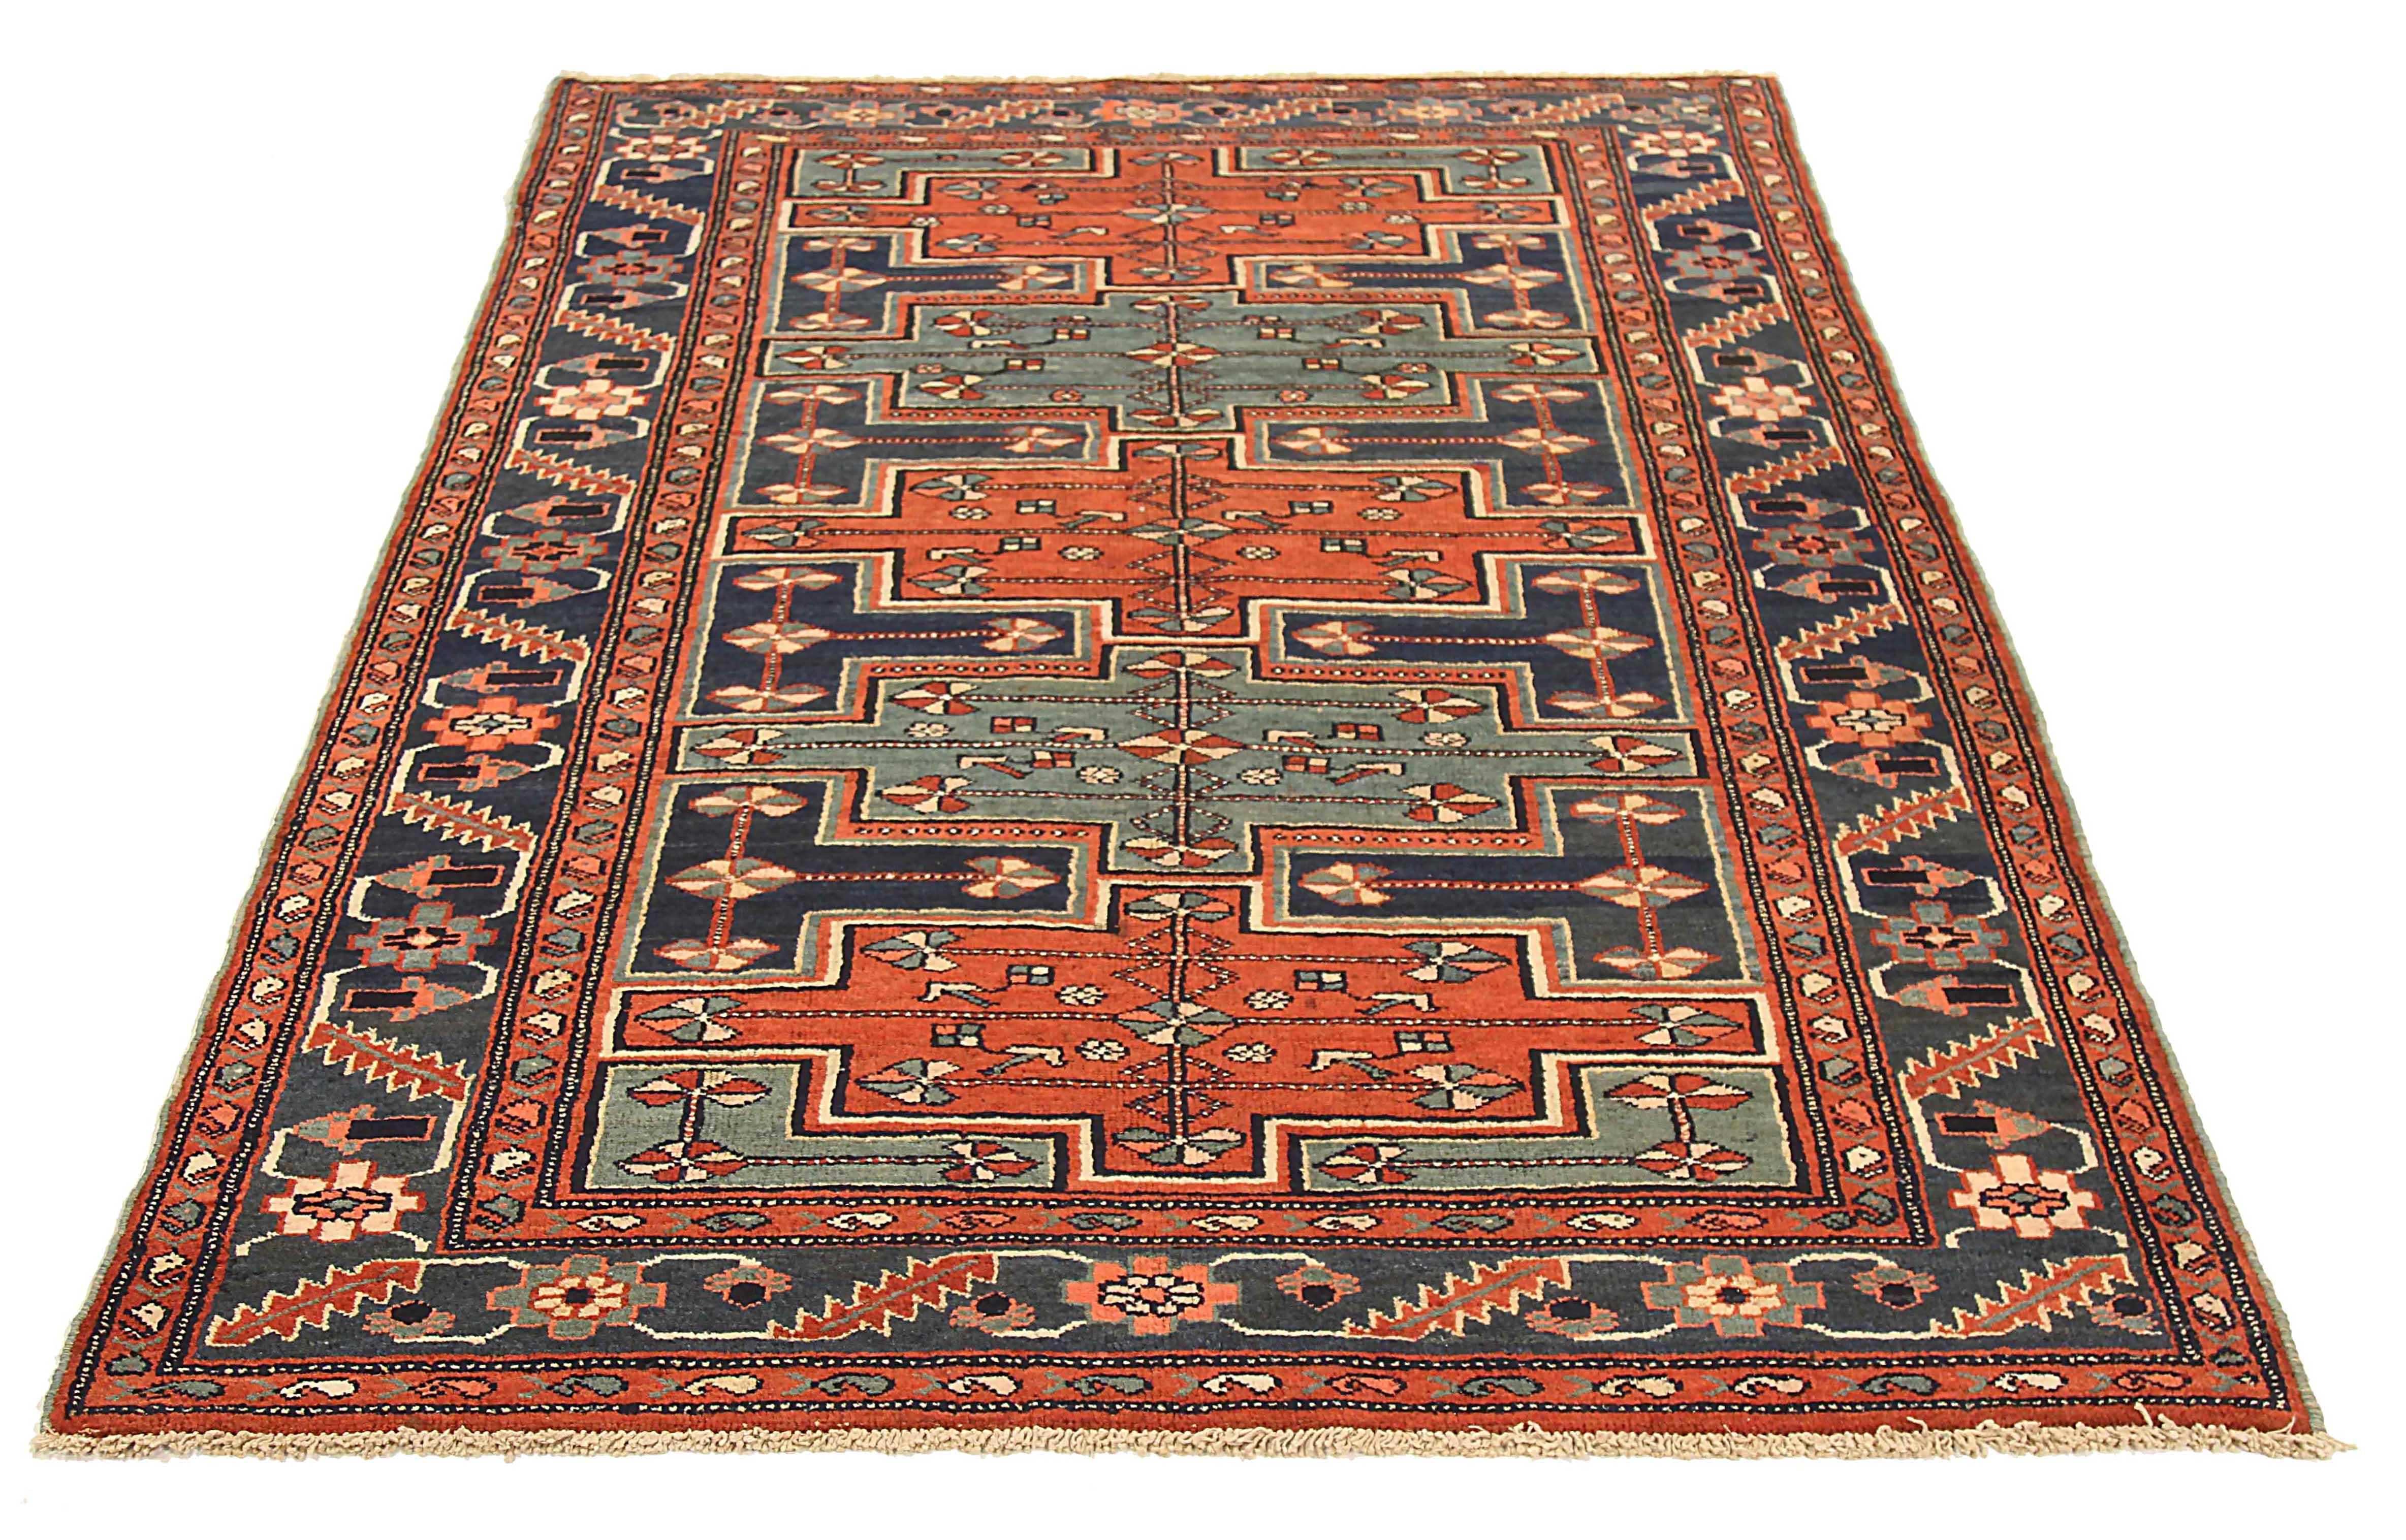 Ancien tapis persan tissé à la main à partir de la meilleure laine de mouton. Il est coloré avec des colorants végétaux entièrement naturels, sans danger pour les humains et les animaux de compagnie. Il s'agit d'un modèle traditionnel de Zanjan